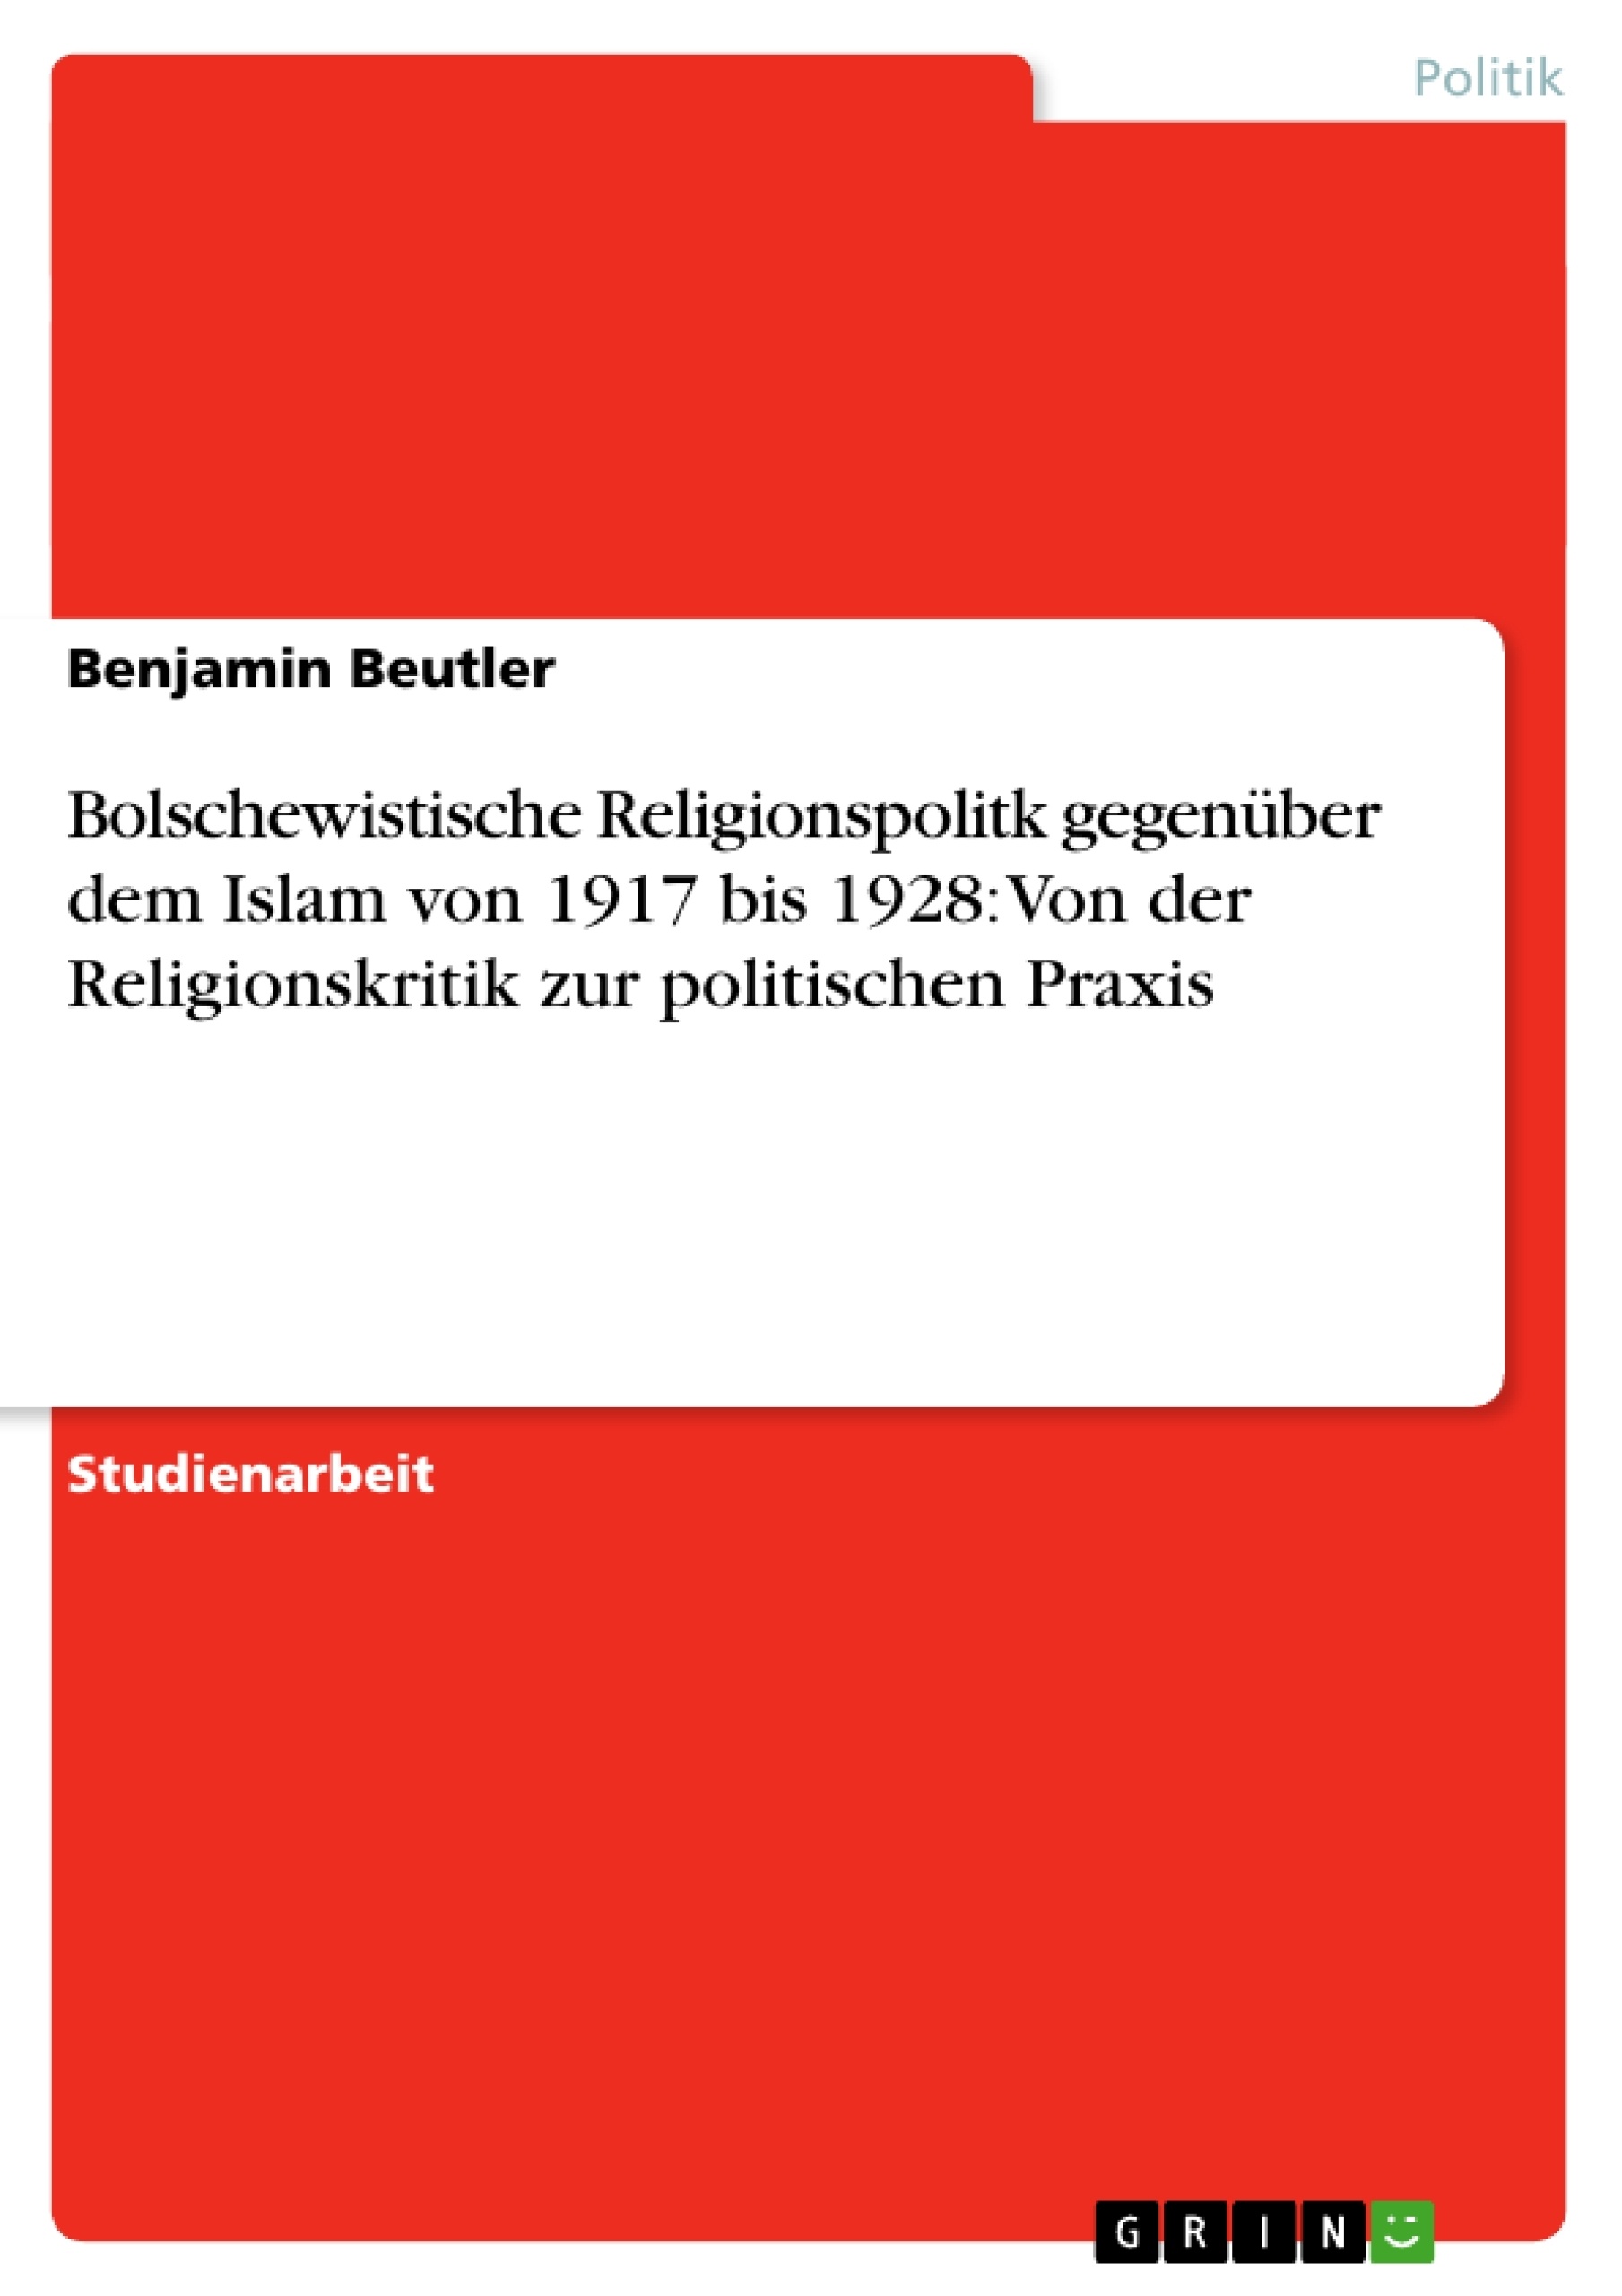 Titel: Bolschewistische Religionspolitk gegenüber dem Islam von 1917 bis 1928: Von der Religionskritik zur politischen Praxis